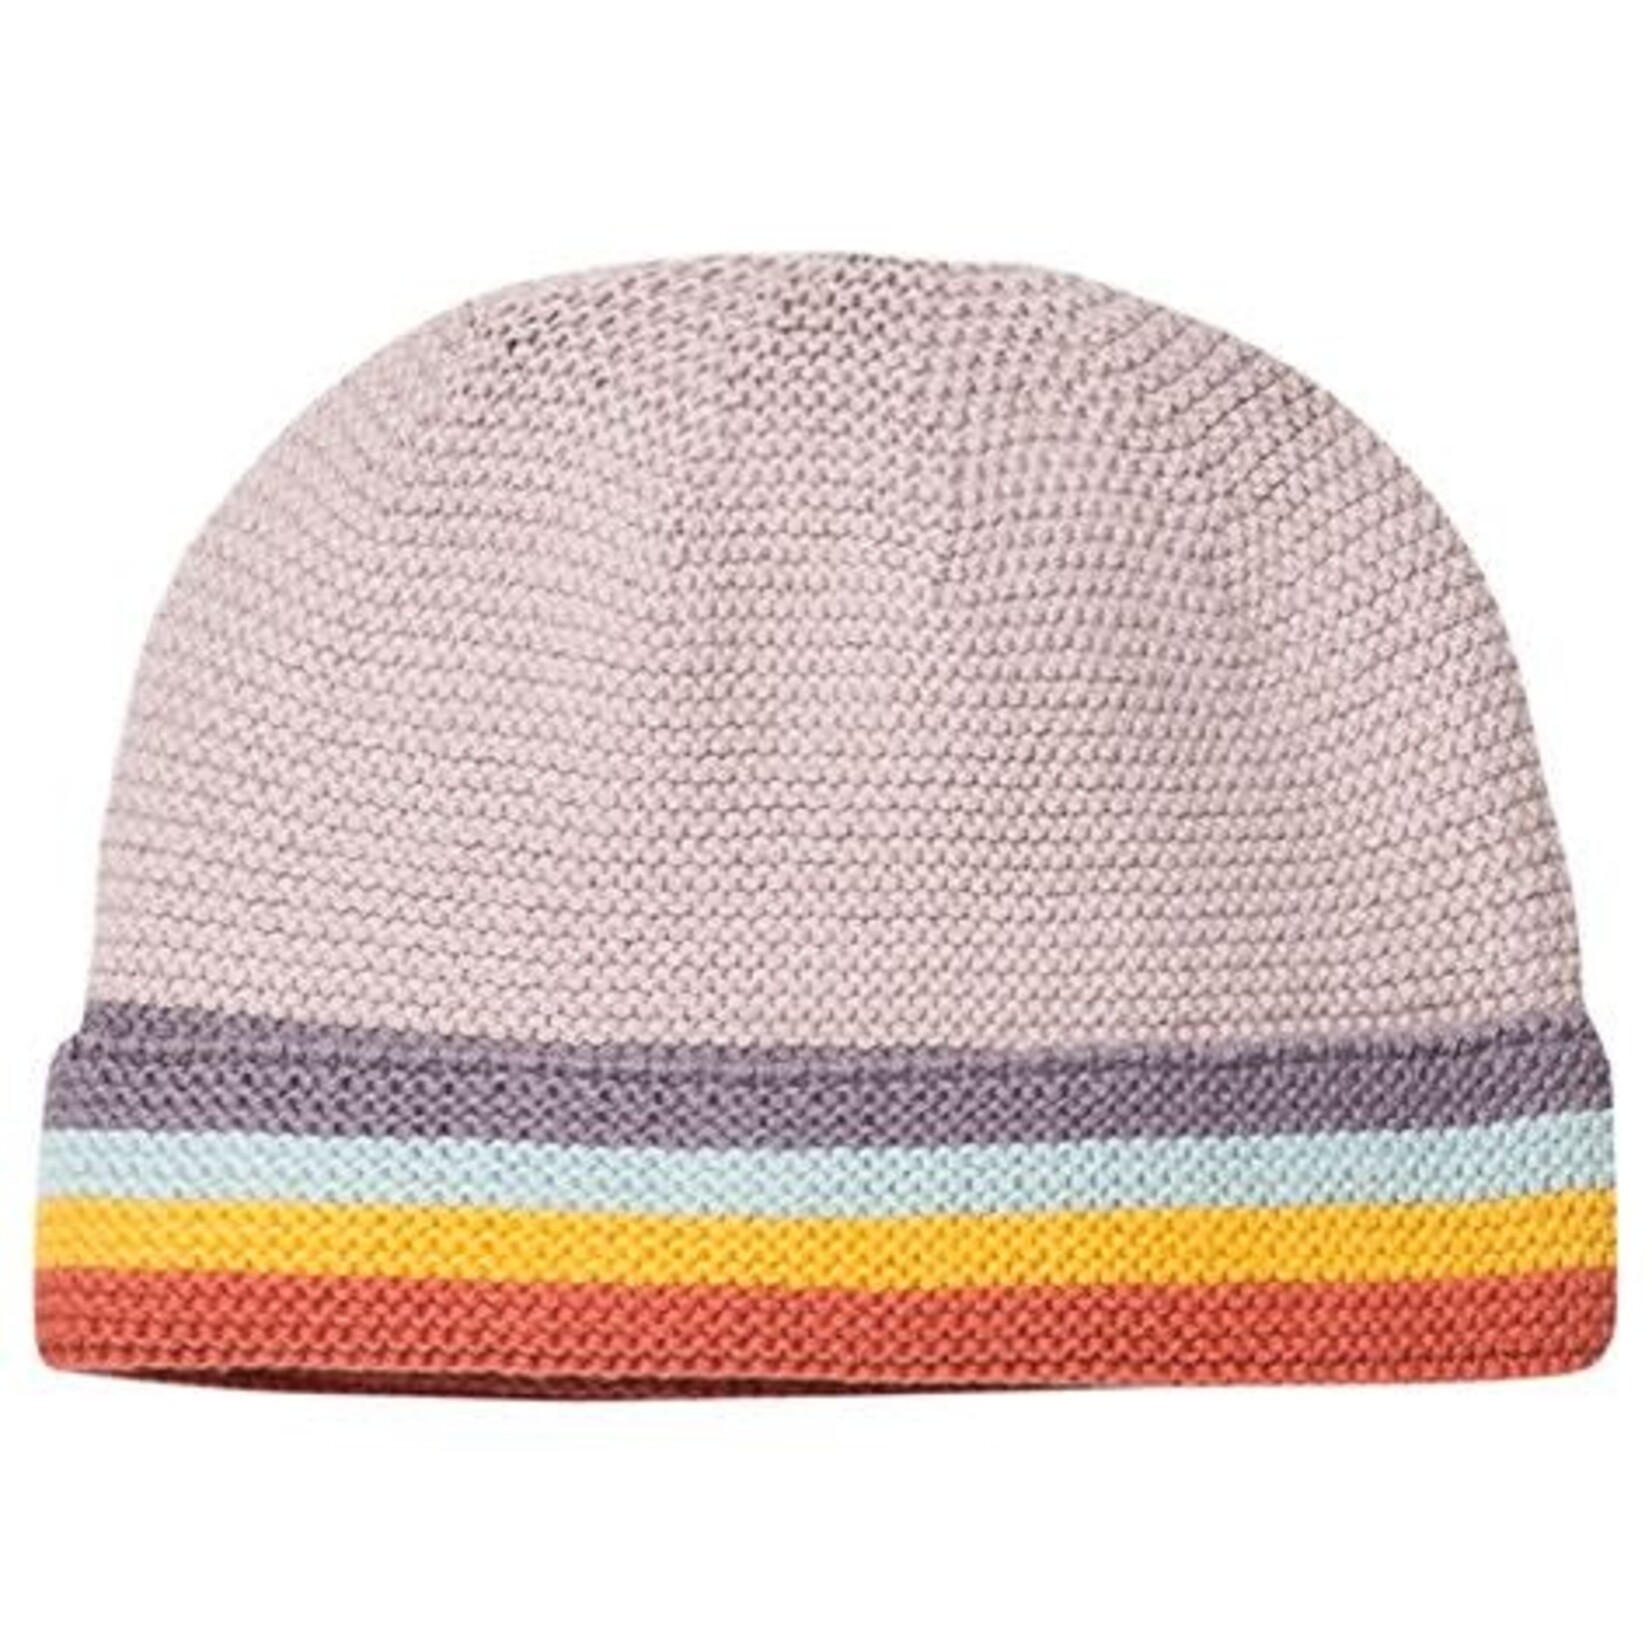 Bonnet Bébé Mixte Harlow knitted hat Soft rainbow 6-12M